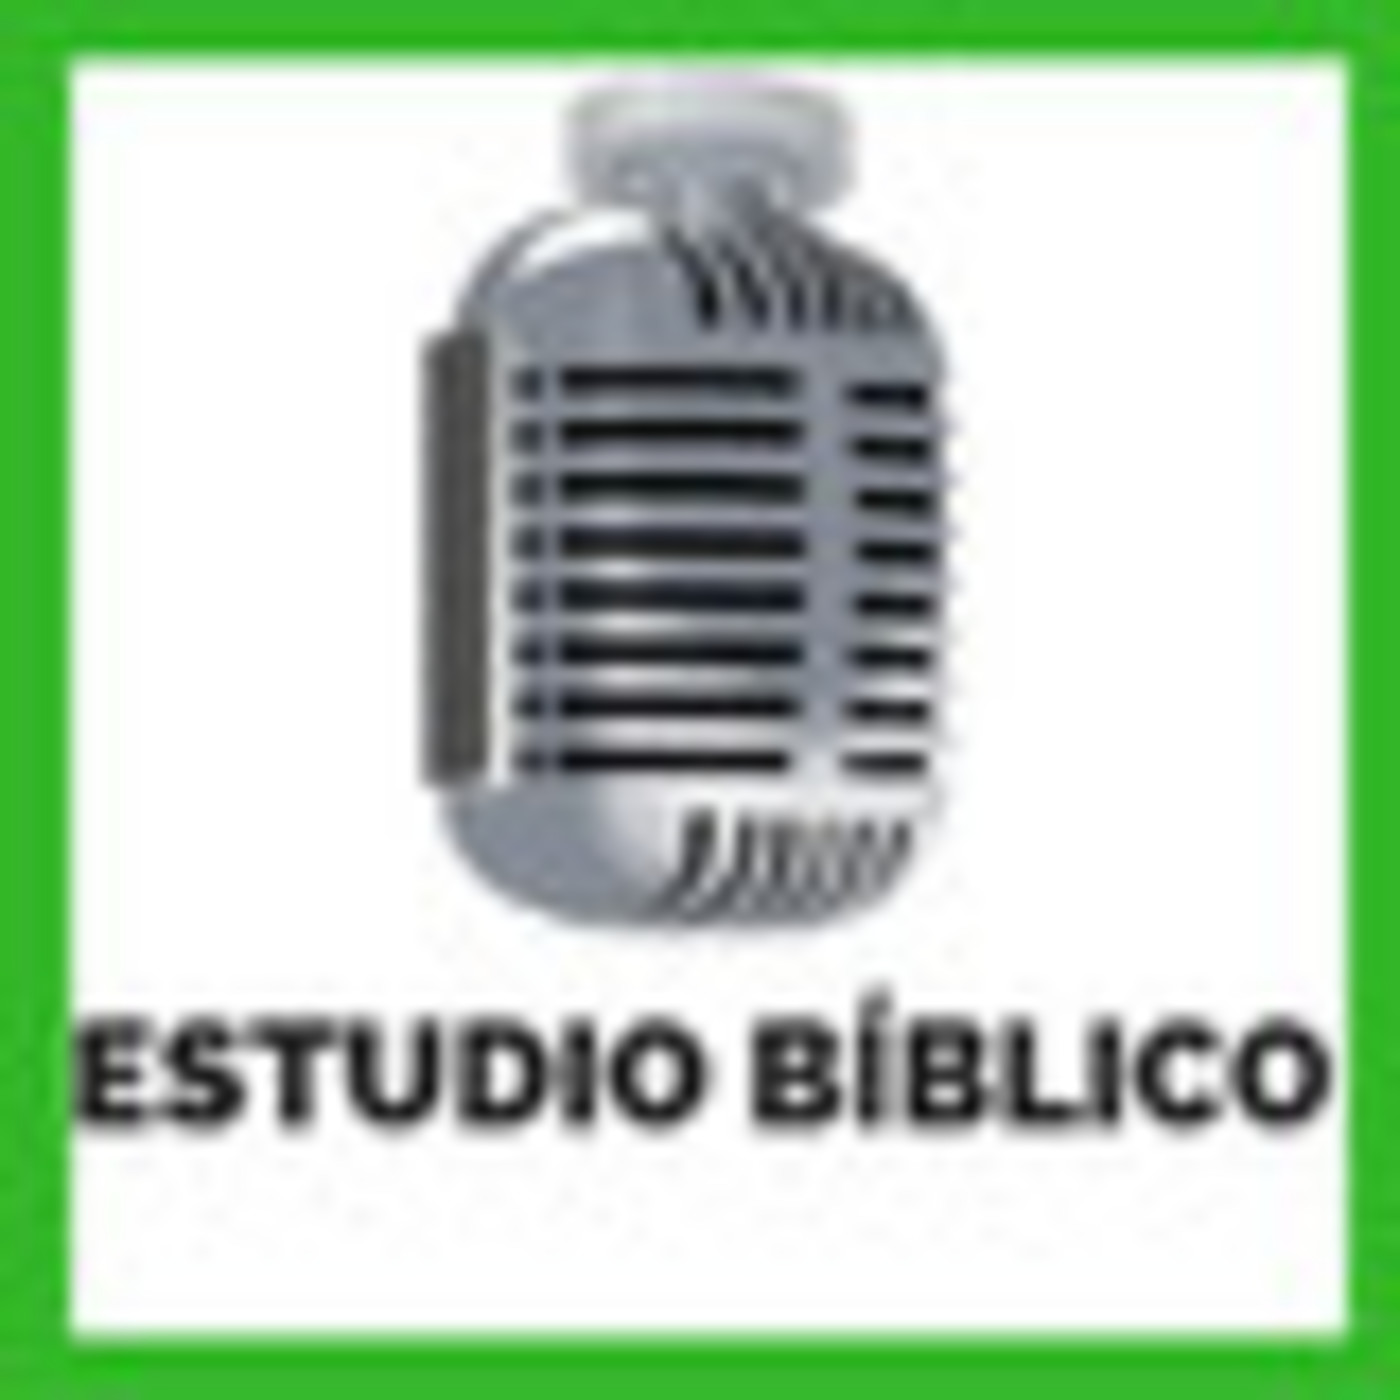 2019-09-19 | Estudio Bíblico | SERVIR A LOS NECESITADOS - UNA VOZ PARA LOS QUE NO TIENEN VOZ